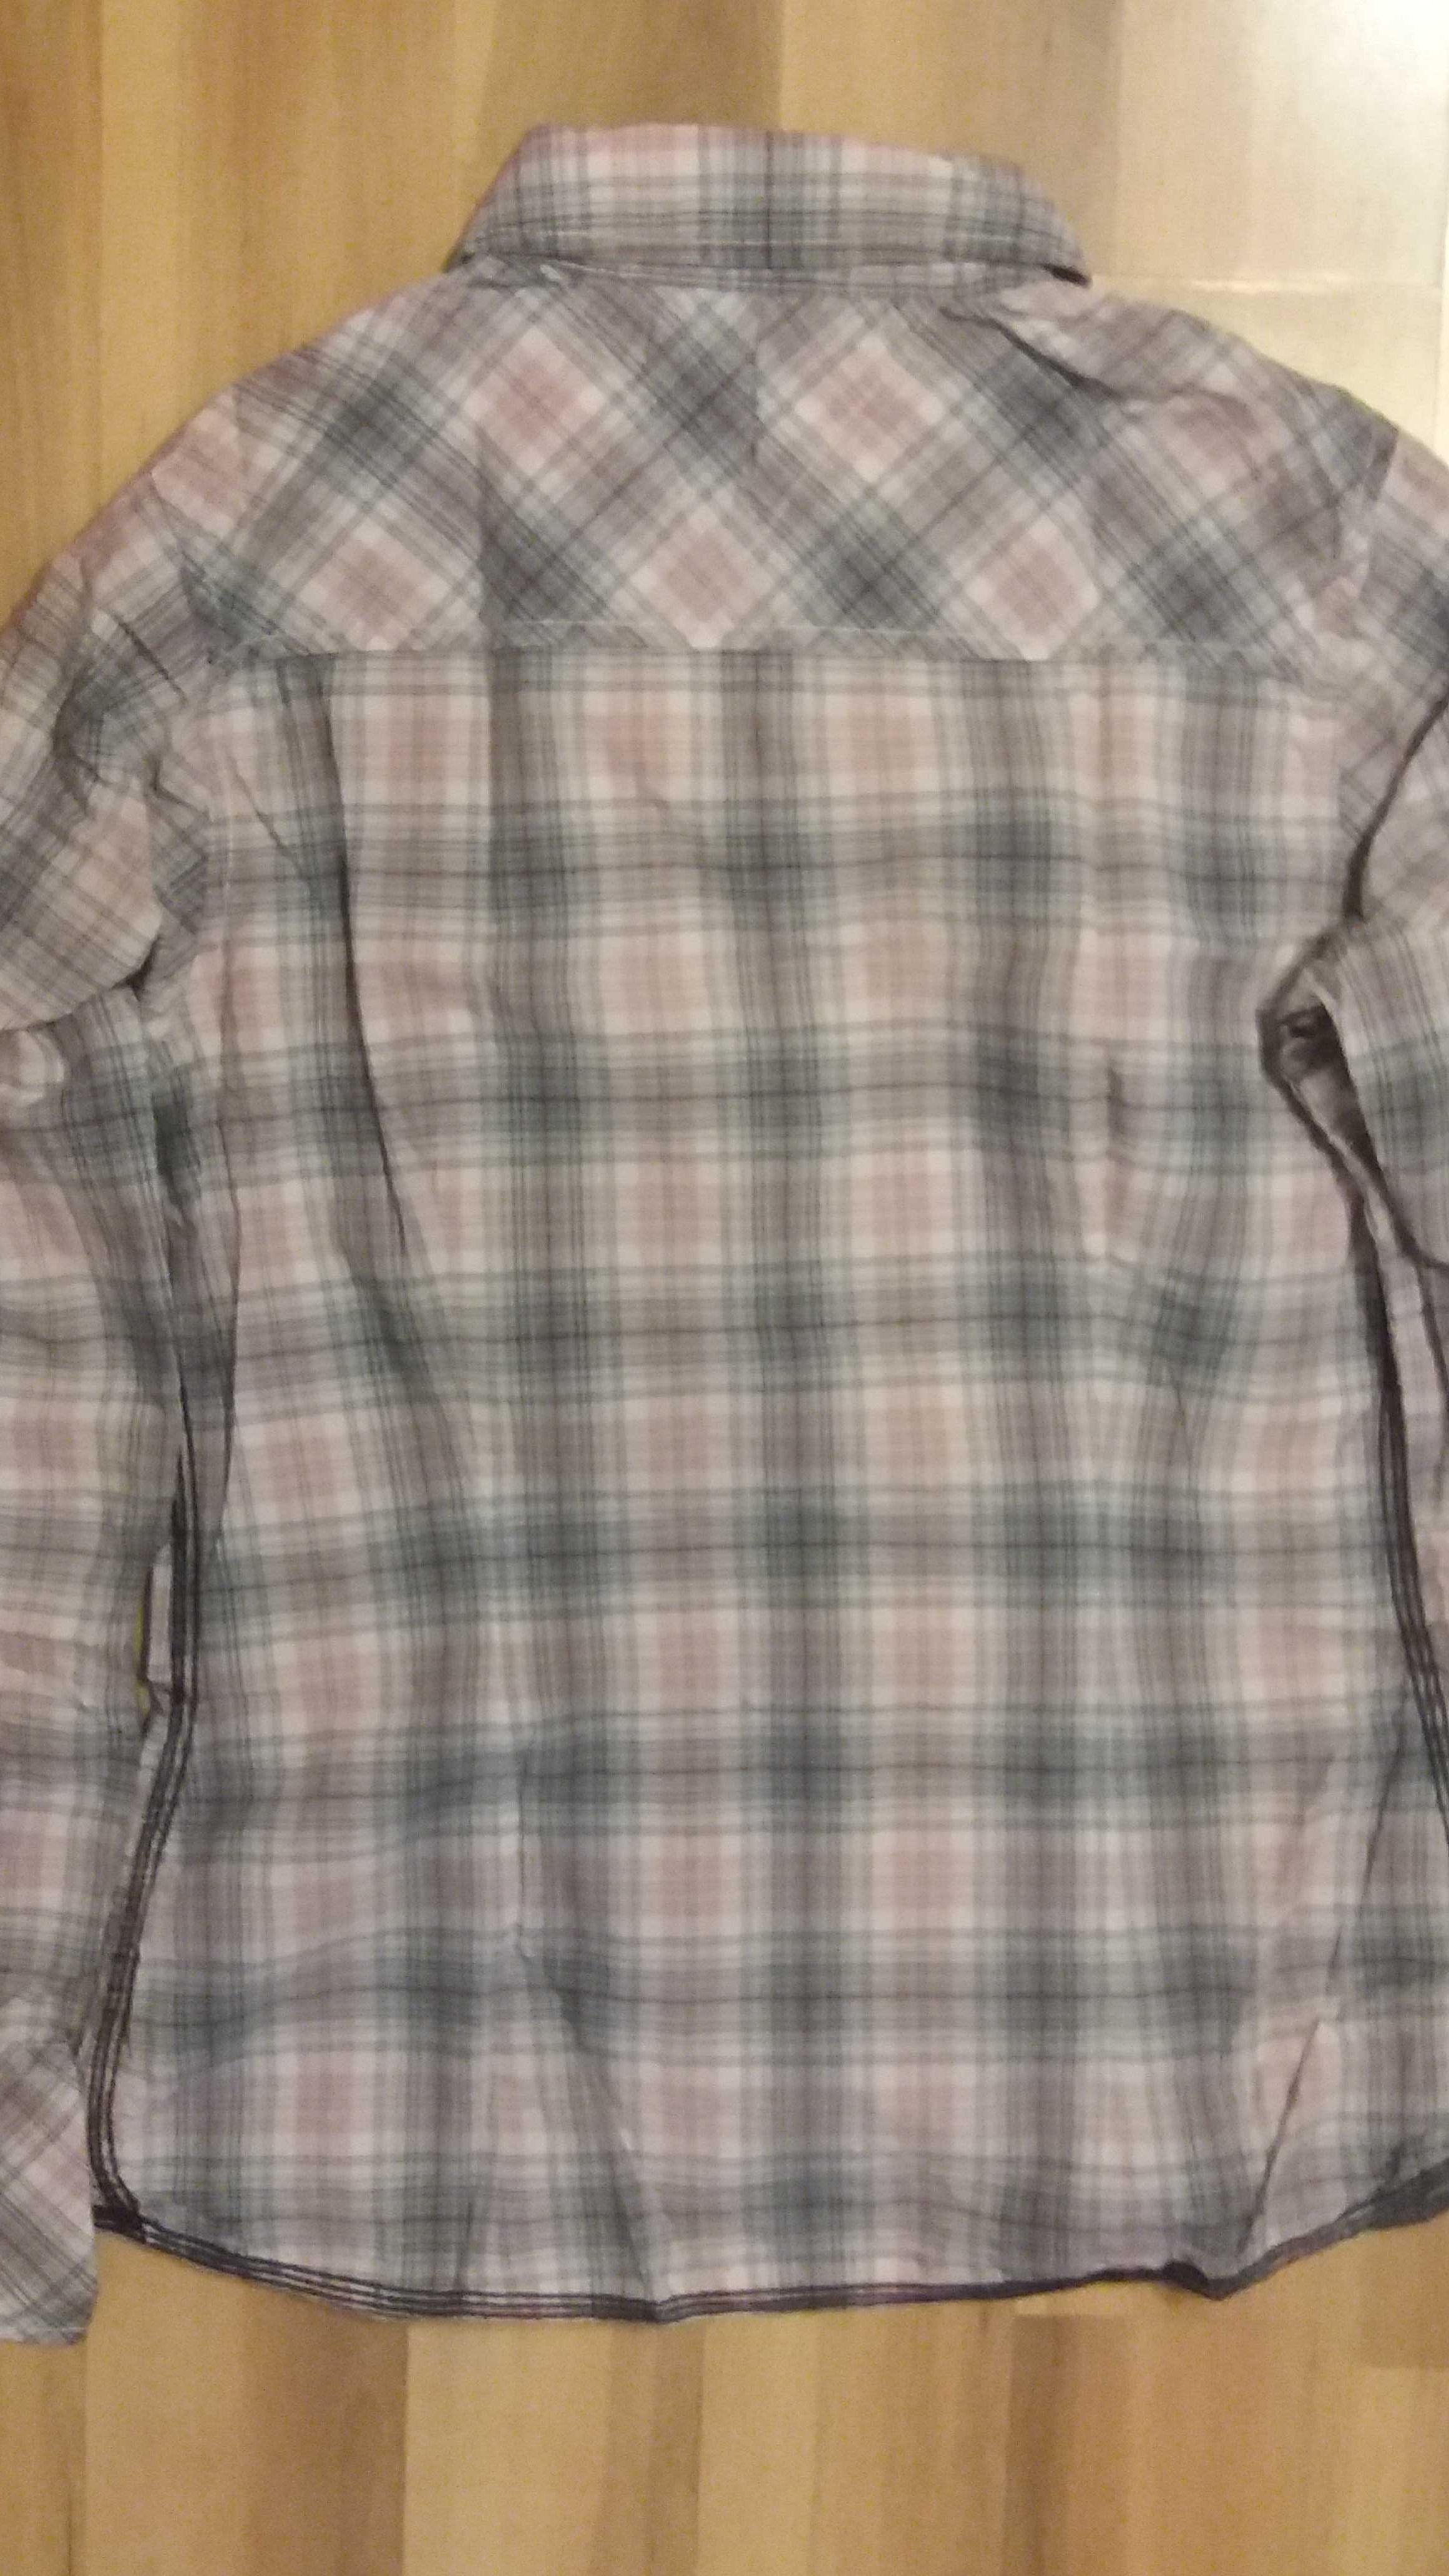 Koszula Tommy Hilfiger.   Stan idealny.    100% bawełna